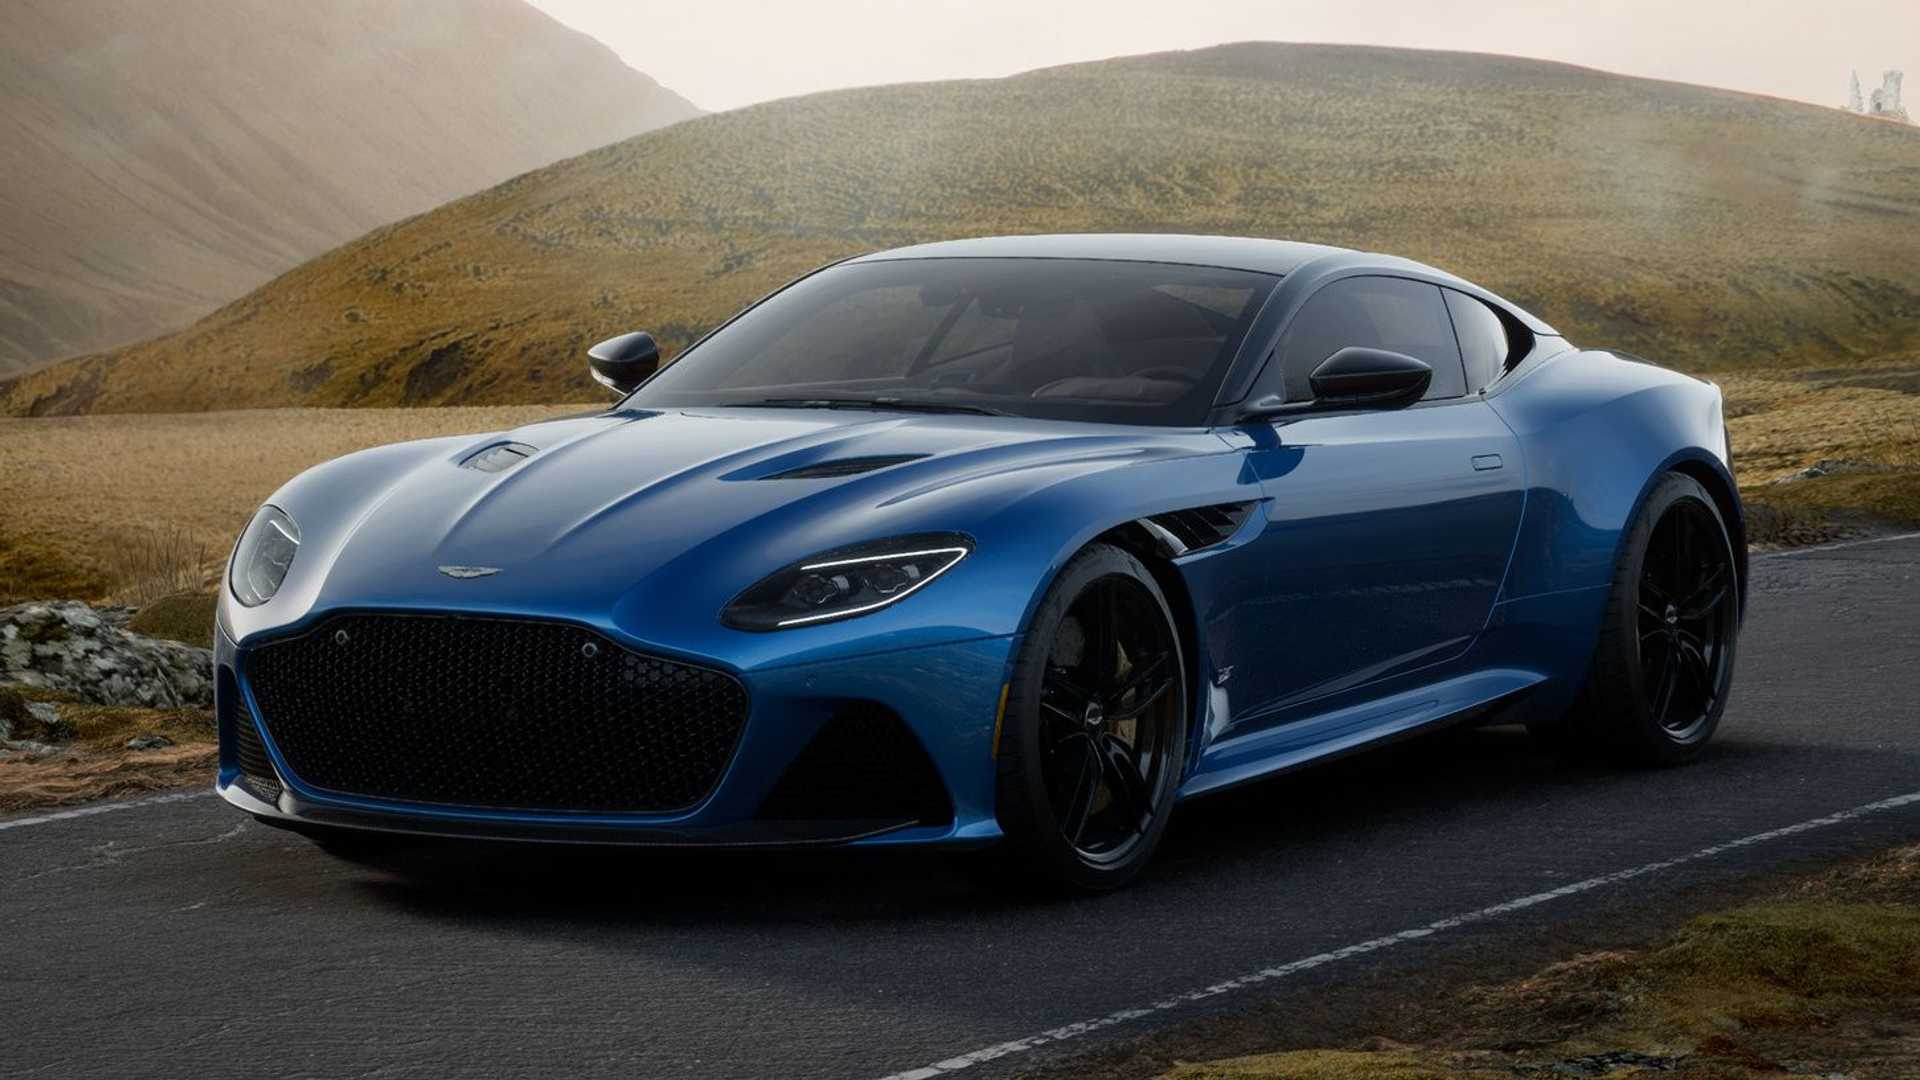 Gama Aston Martin 2022 m 225 s potencia cambio de versiones